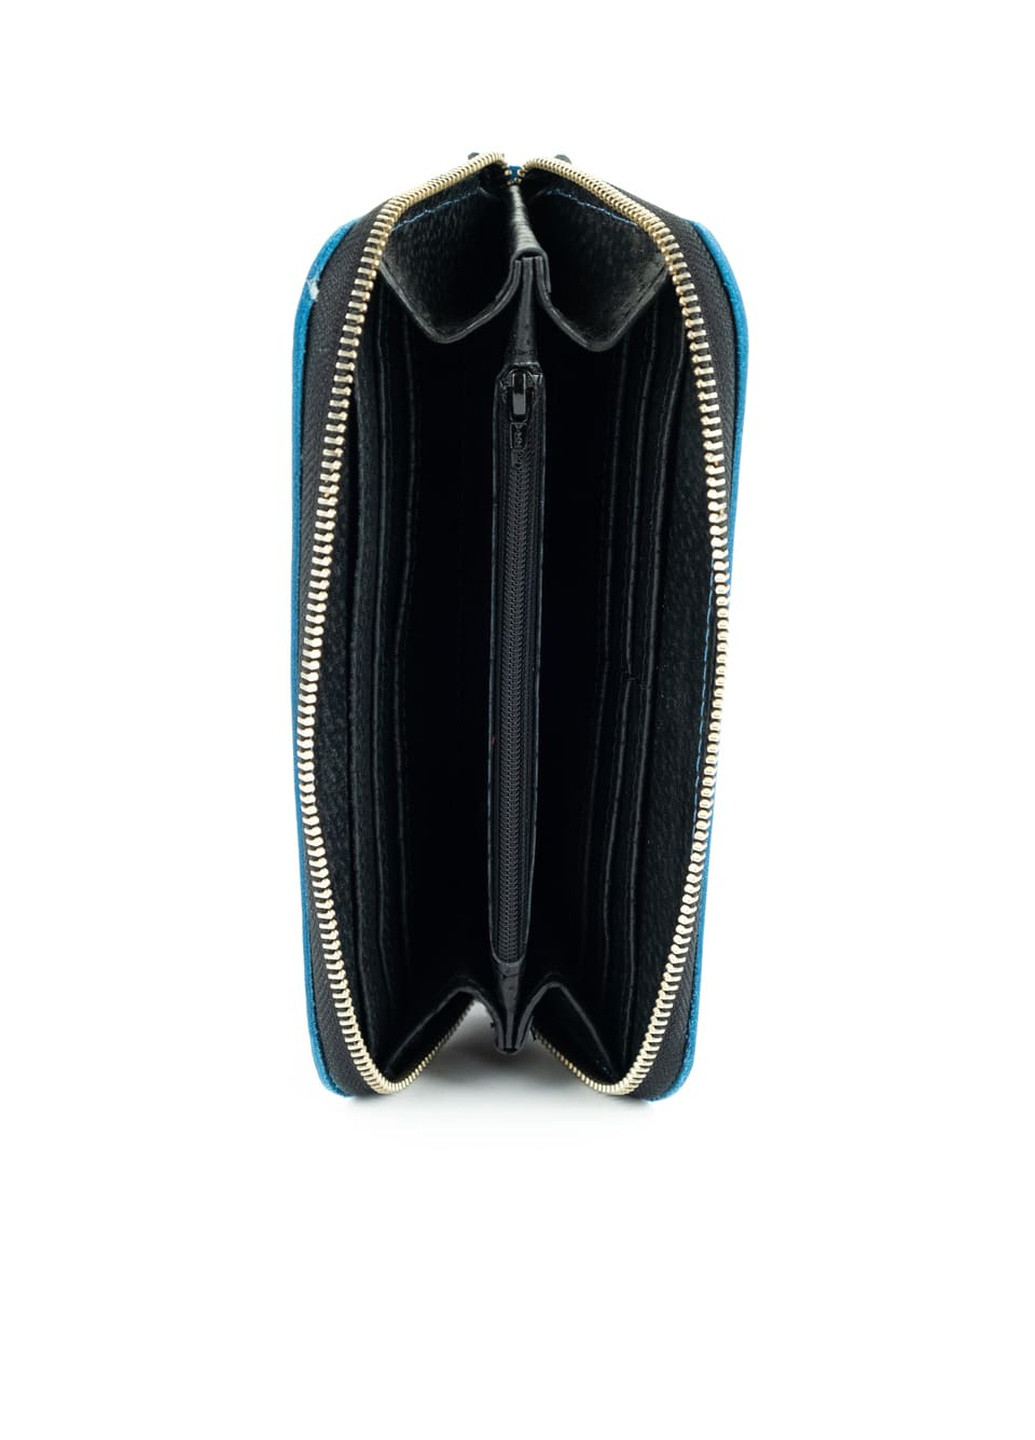 Кожаный портмоне кошелек зиппер на молнии Teo синий винтажный Kozhanty (252315361)